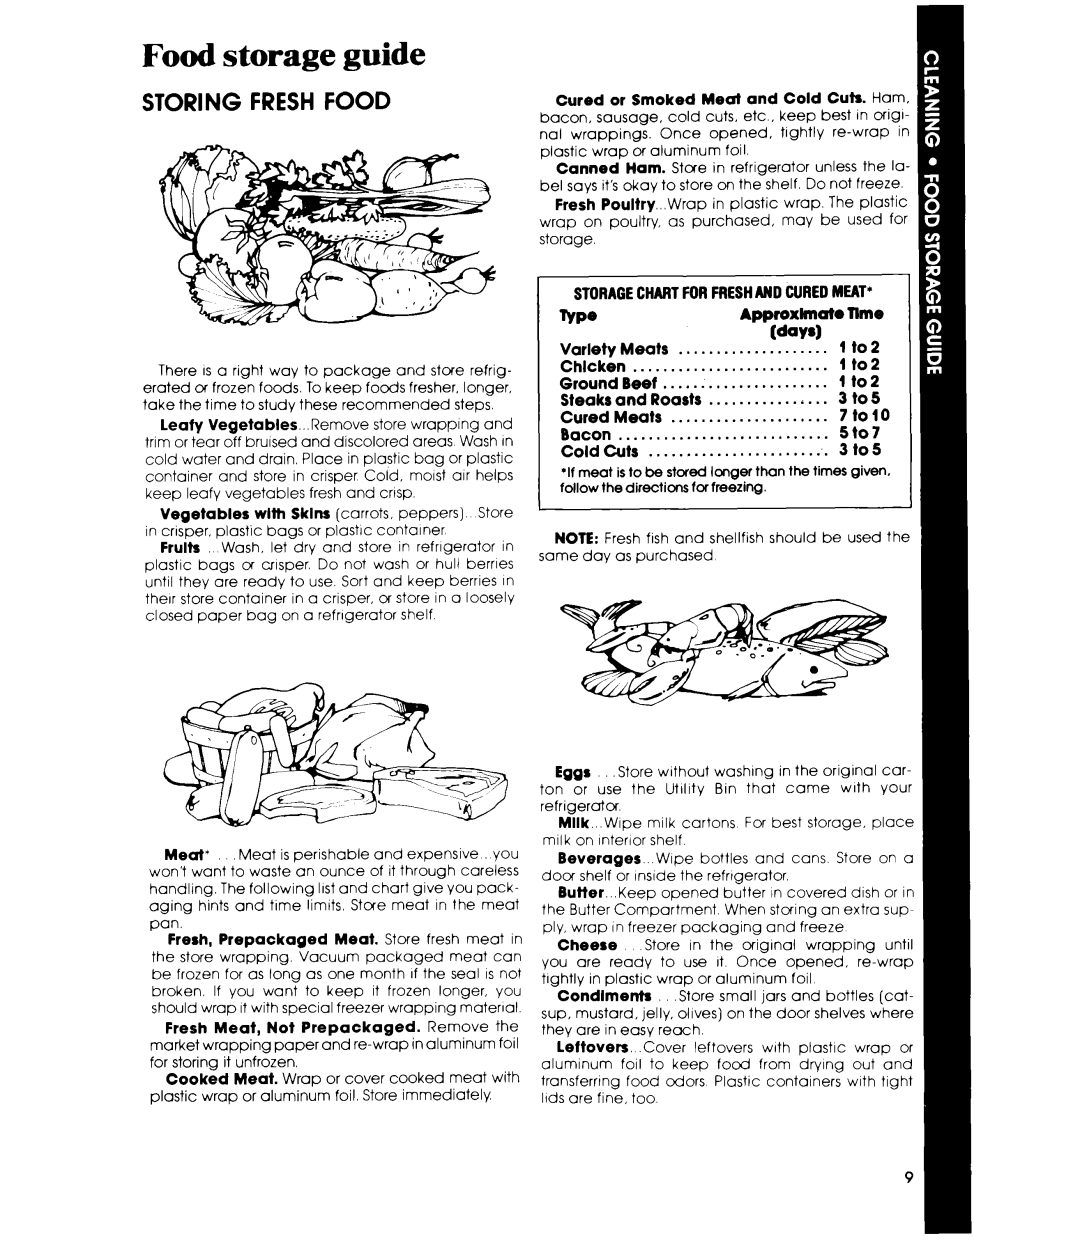 Whirlpool ETl6XK manual Food storage guide, Storing Fresh Food 